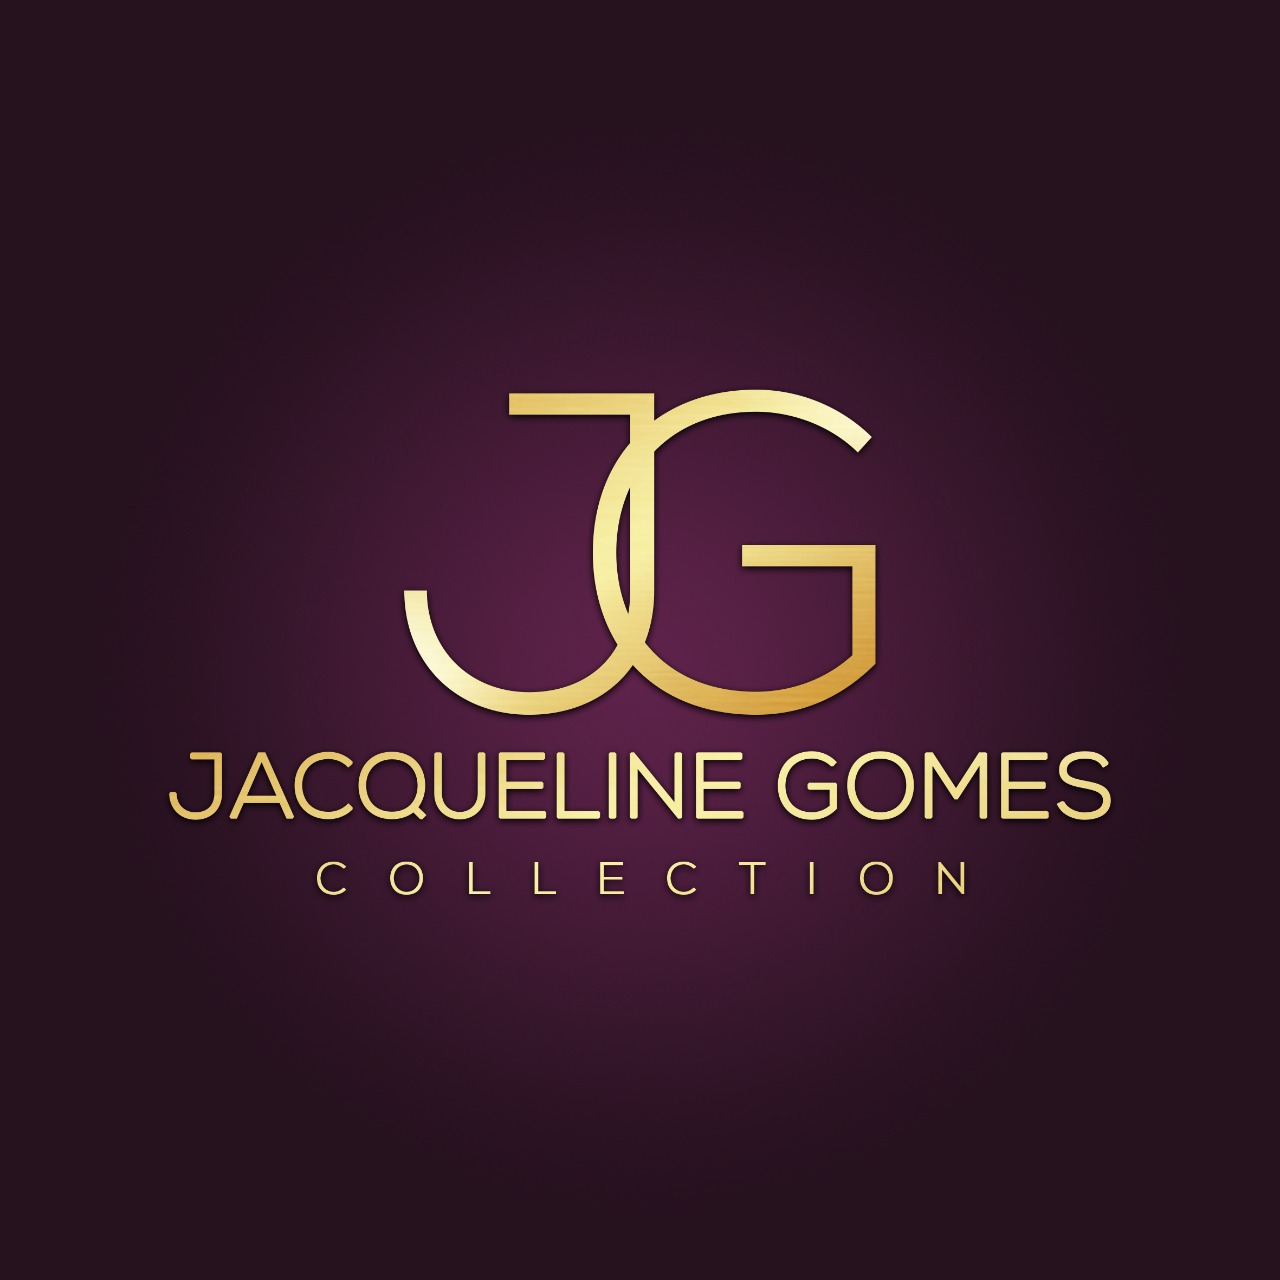 Jacqueline : Brand Short Description Type Here.